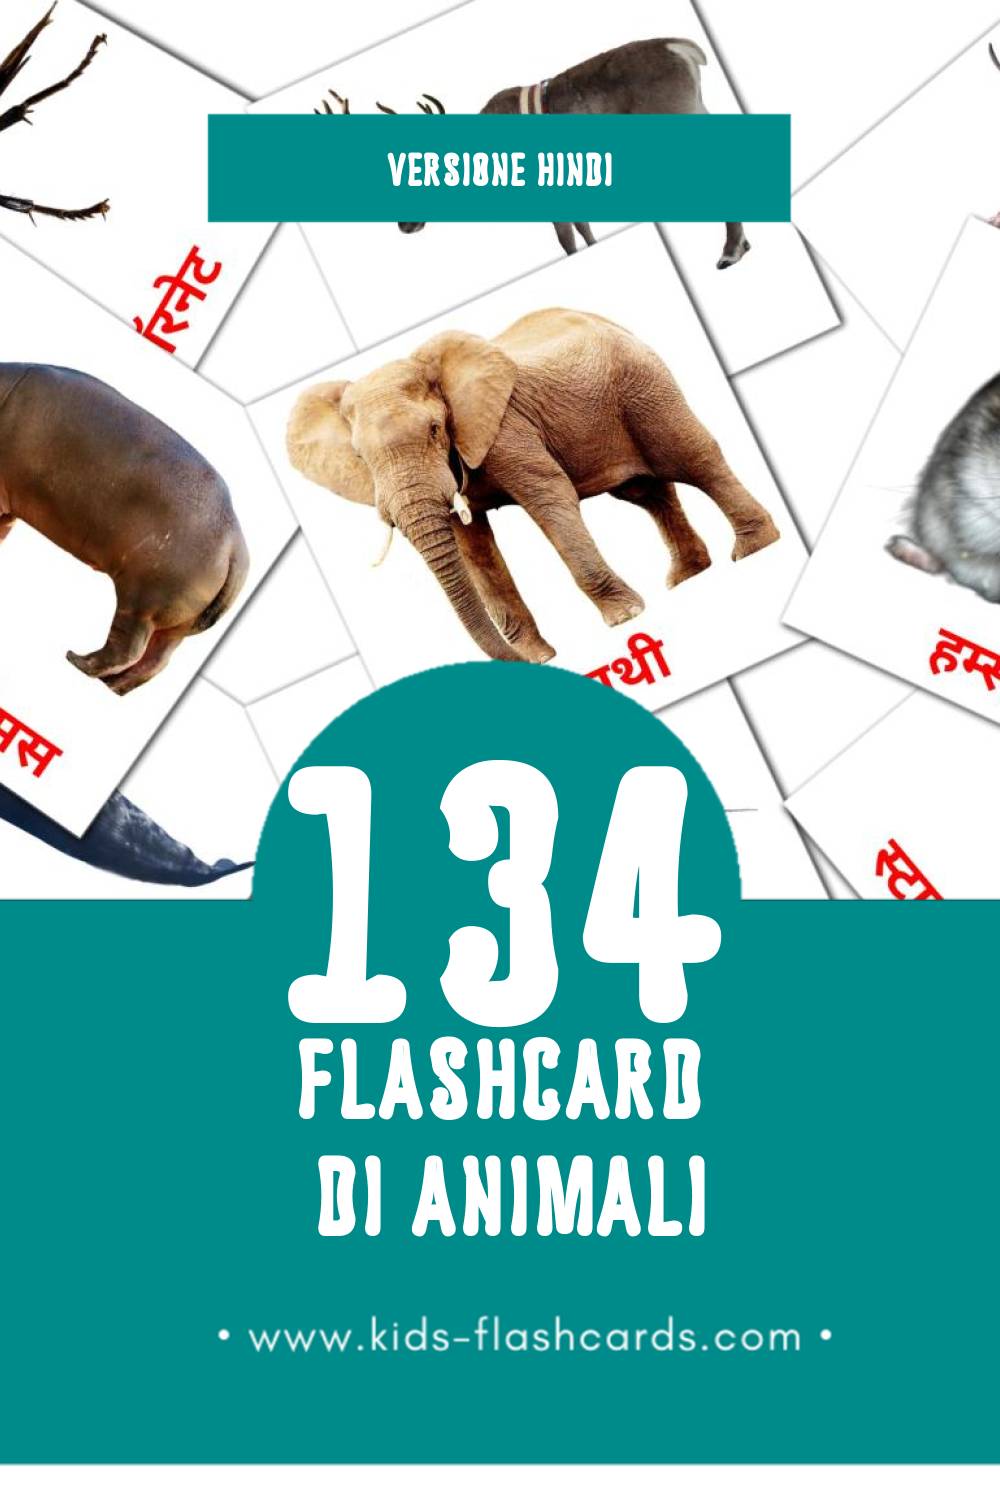 Schede visive sugli जानवर per bambini (134 schede in Hindi)